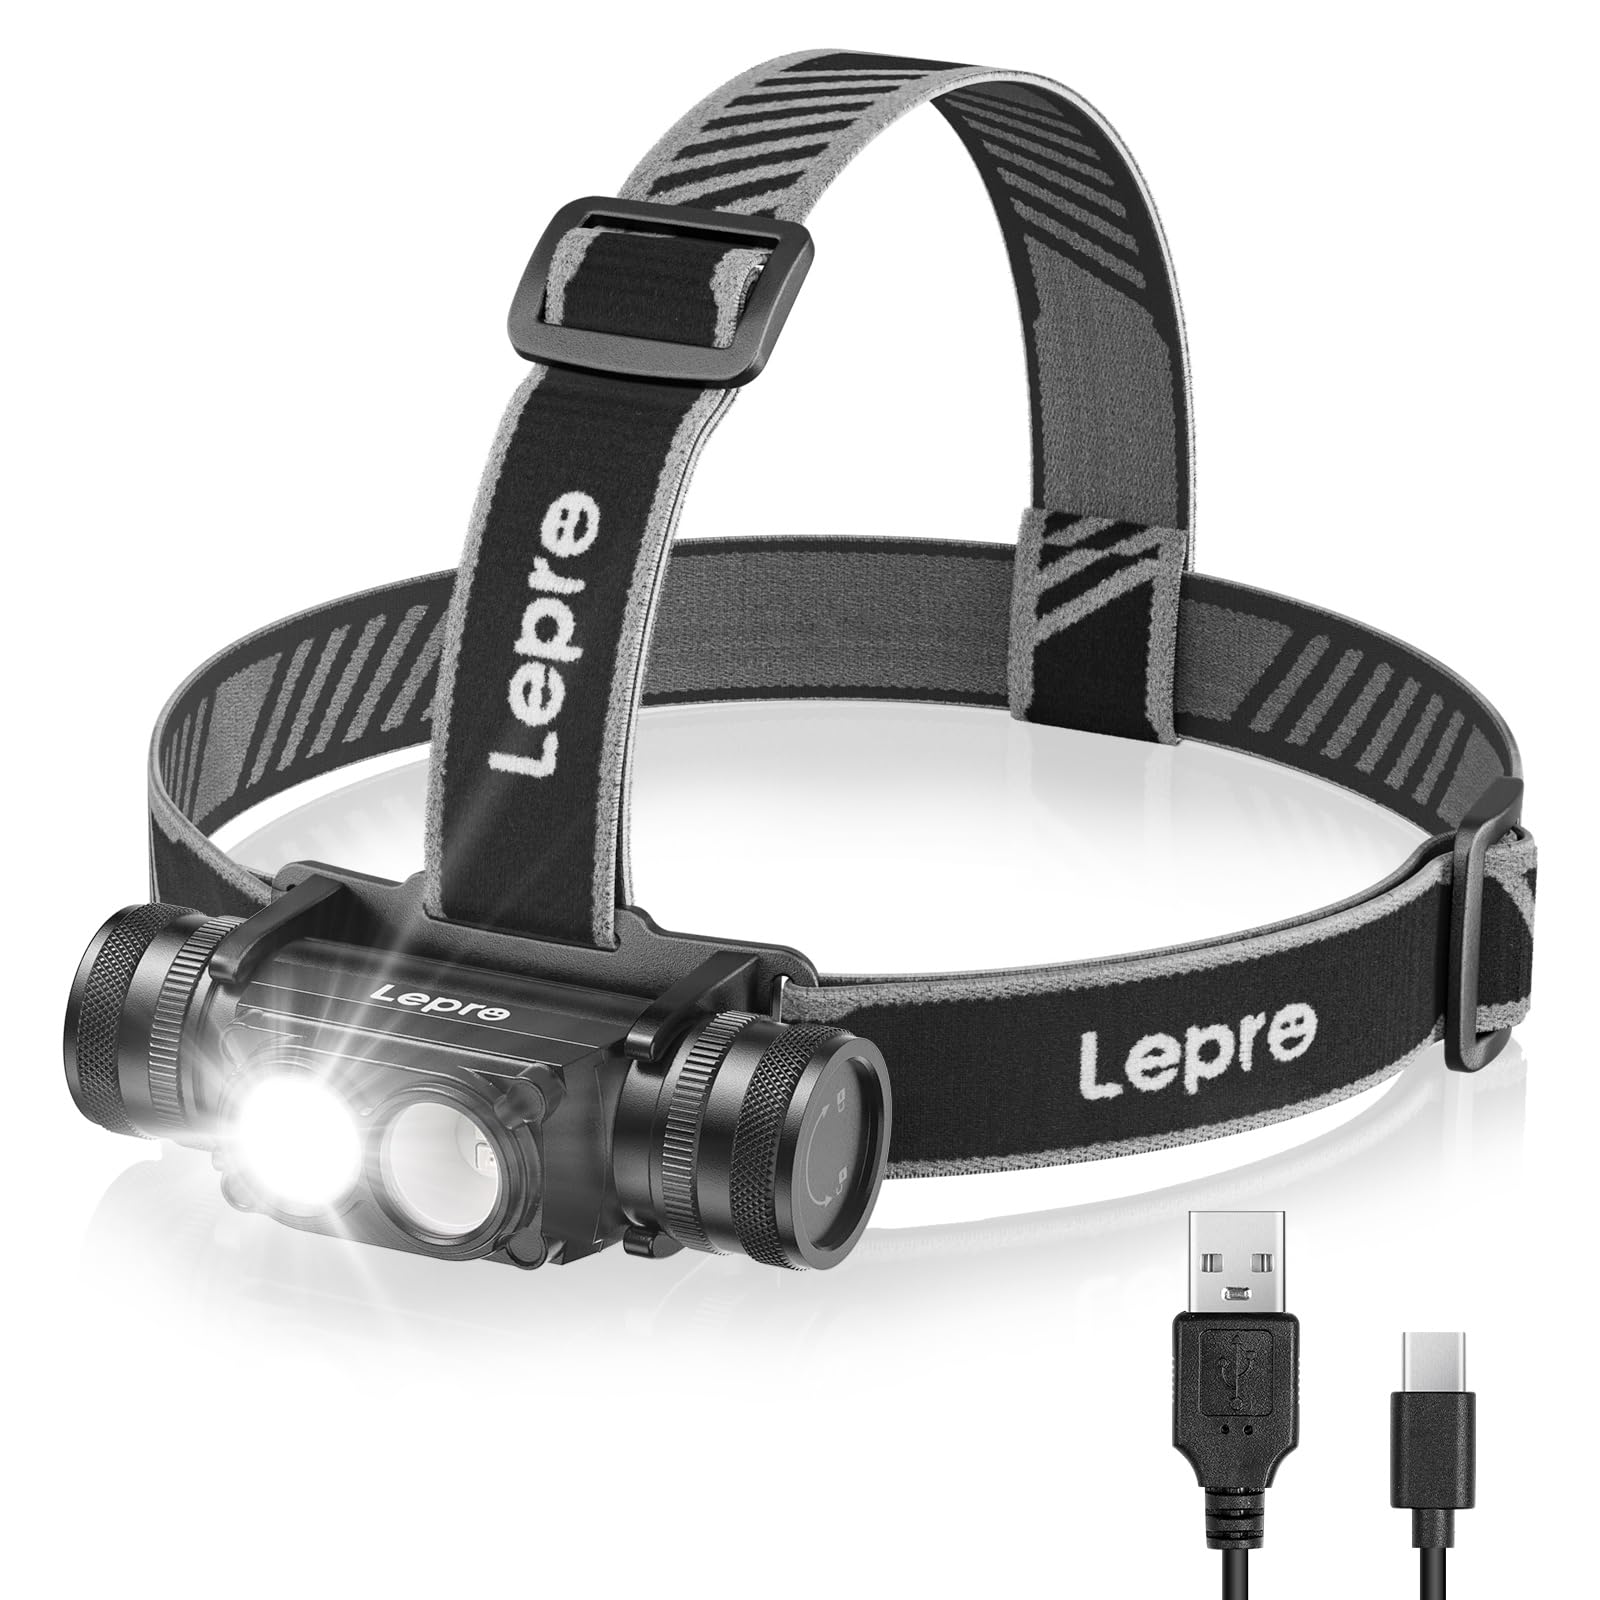 Lepro Kopflampe Stirnlampe Aufladbar, IP65 Superhell 1000 Lumen Abnehmbarer Led Stirnlampe, Kopfleuchte mit Rotlicht, 6 Beleuchtungsmodi für Camping, Sport, Angeln, Handwerk [inkl. USB C-Kabel]